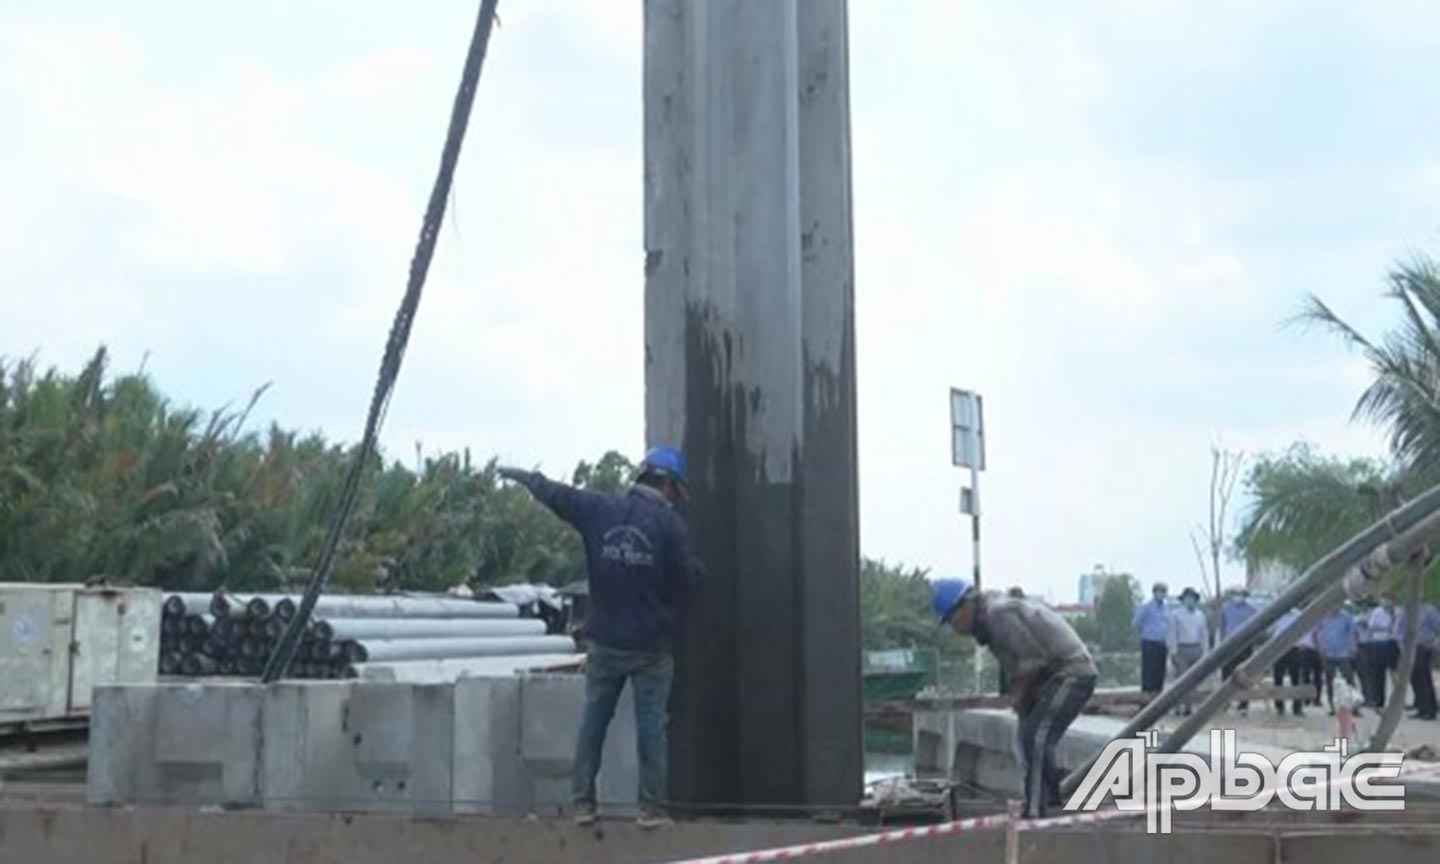 công  trình  xử lý sạt lở bờ Bắc rạch Bảo Định, thành phố Mỹ Tho với tổng chiều dài 417m, cũng đang trong giai đoạn thi công đóng cọc, công trình dự kiến hoàn thành vào tháng 9/2020.